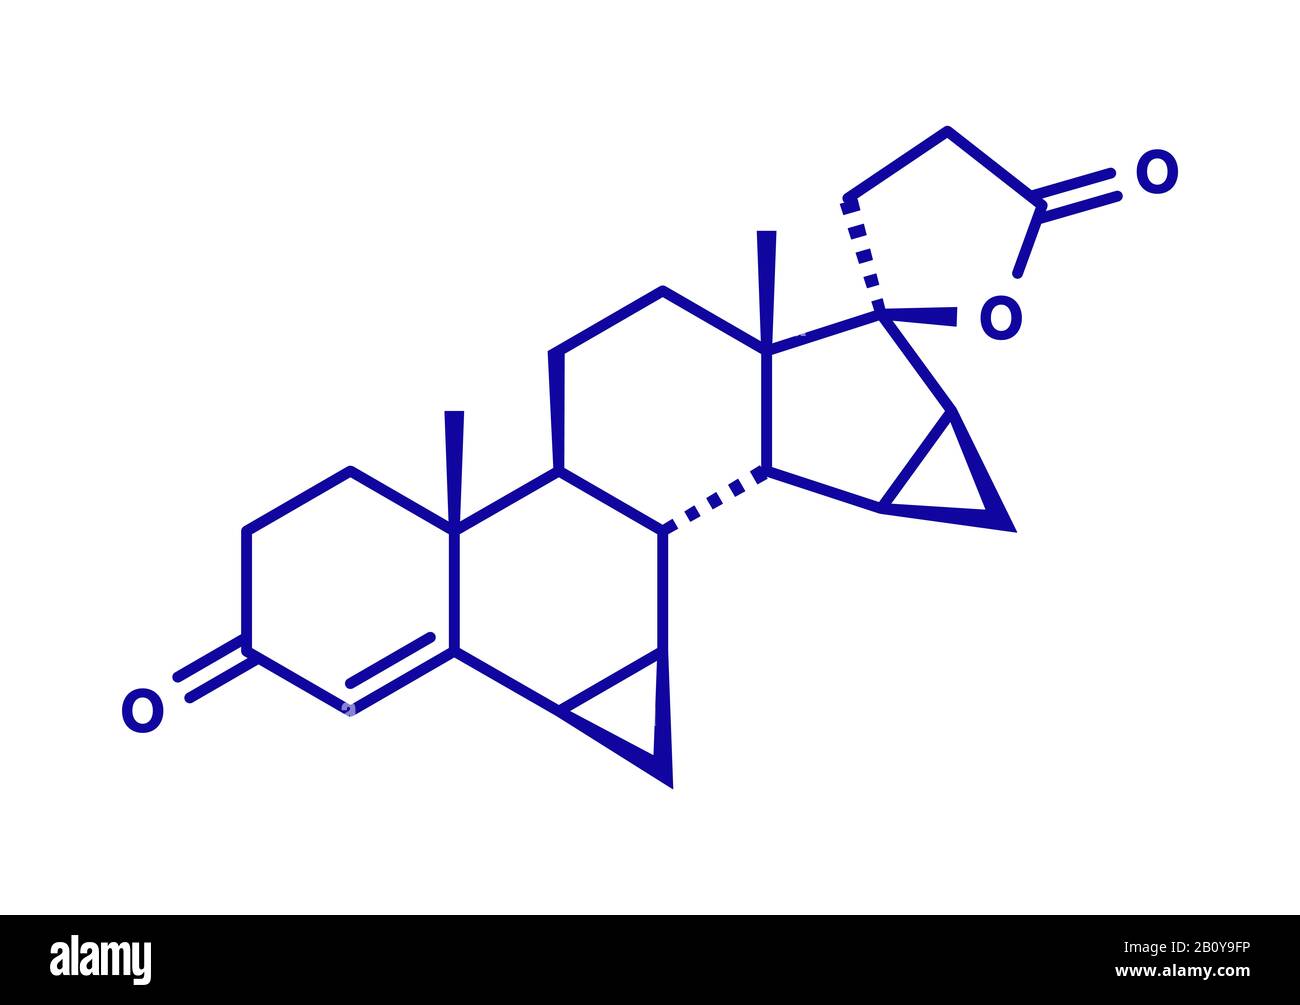 Drospirenone contraceptive drug molecule, illustration Stock Photo